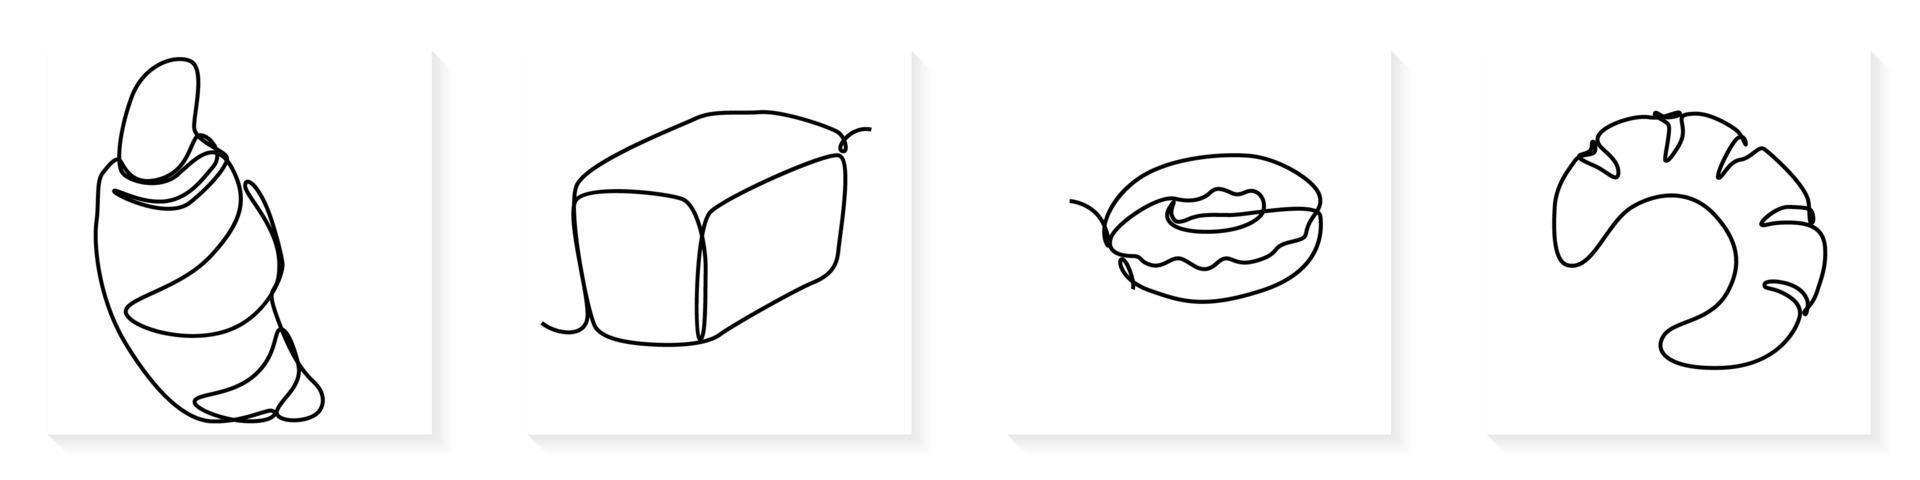 Single kontinuierlich Linie Zeichnung von stilisiert Süss frisch backen Bäckerei Gebäck im minimal kontinuierlich einer Linie vektor